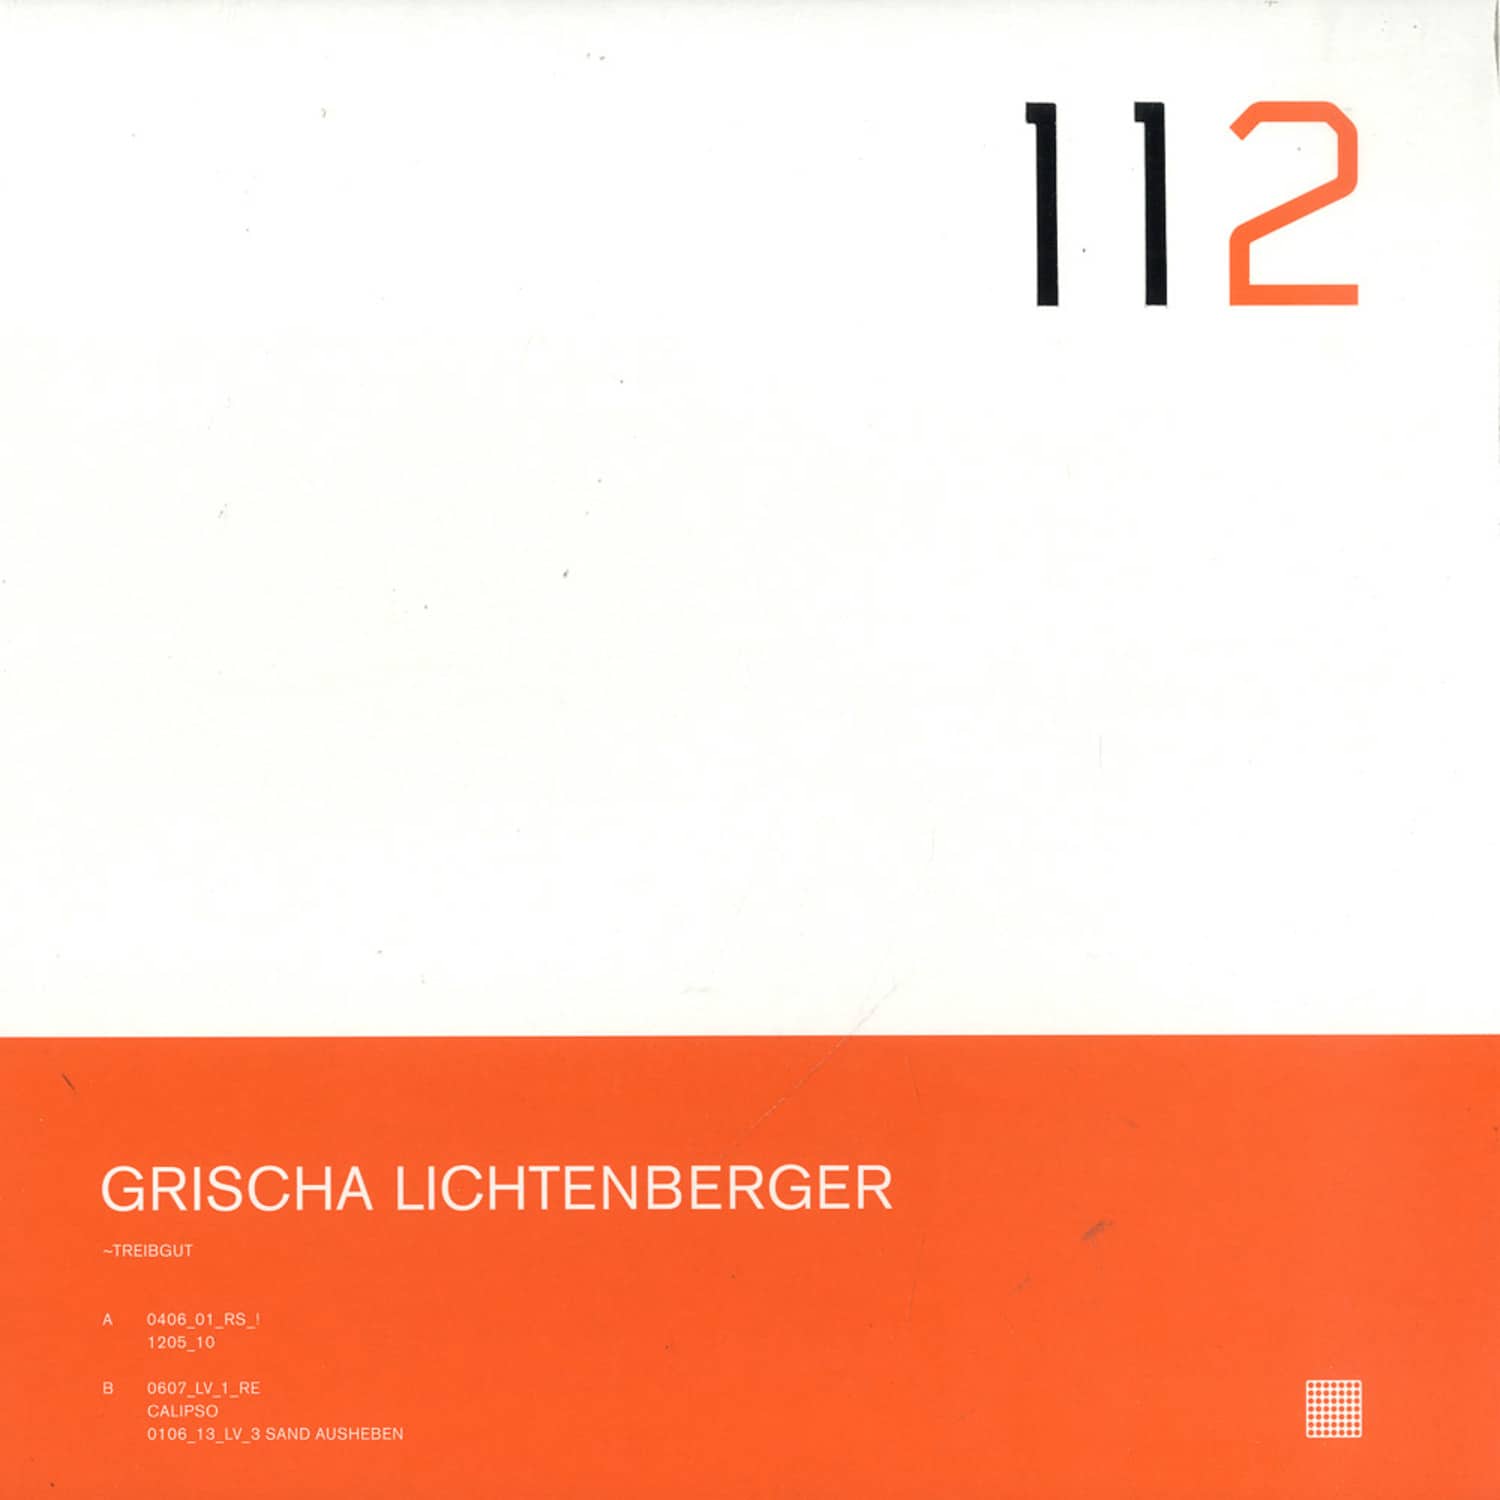 Grischa Lichtenberger - TREIBGUT